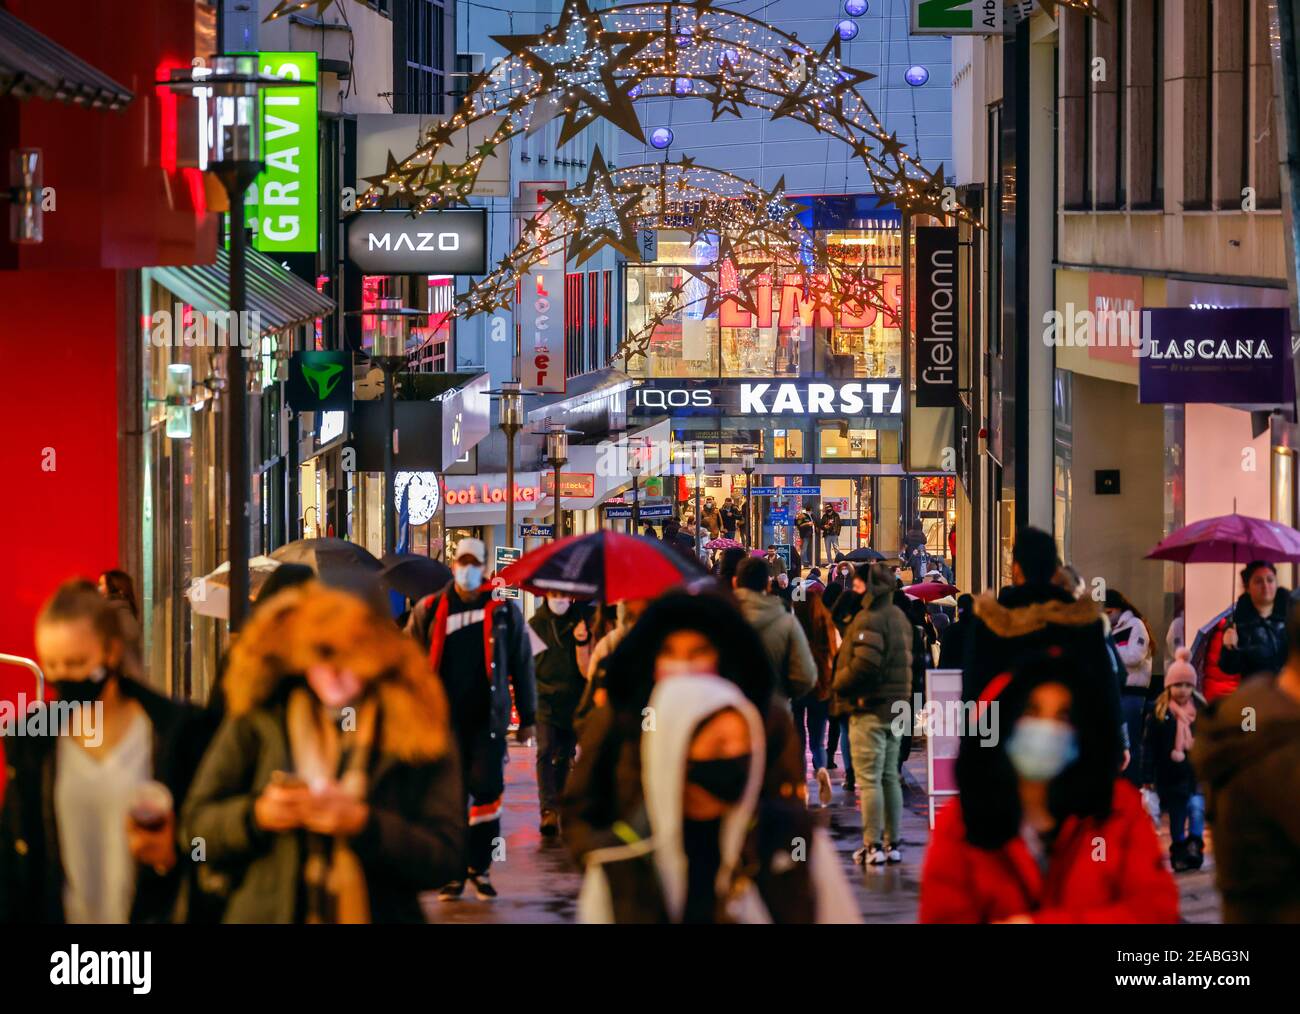 Essen, région de la Ruhr, Rhénanie-du-Nord-Westphalie, Allemagne - Essen centre-ville en temps de crise de la couronne dans la soirée avant le verrouillage dur, beaucoup de passants avec des masques protecteurs tout en faisant du shopping sur le thème de Noël Limbecker Strasse, à l'arrière du centre commercial Limbecker Platz, Dans la zone piétonne d'Essen, il n'y a qu'une seule recommandation de porter un masque. Banque D'Images